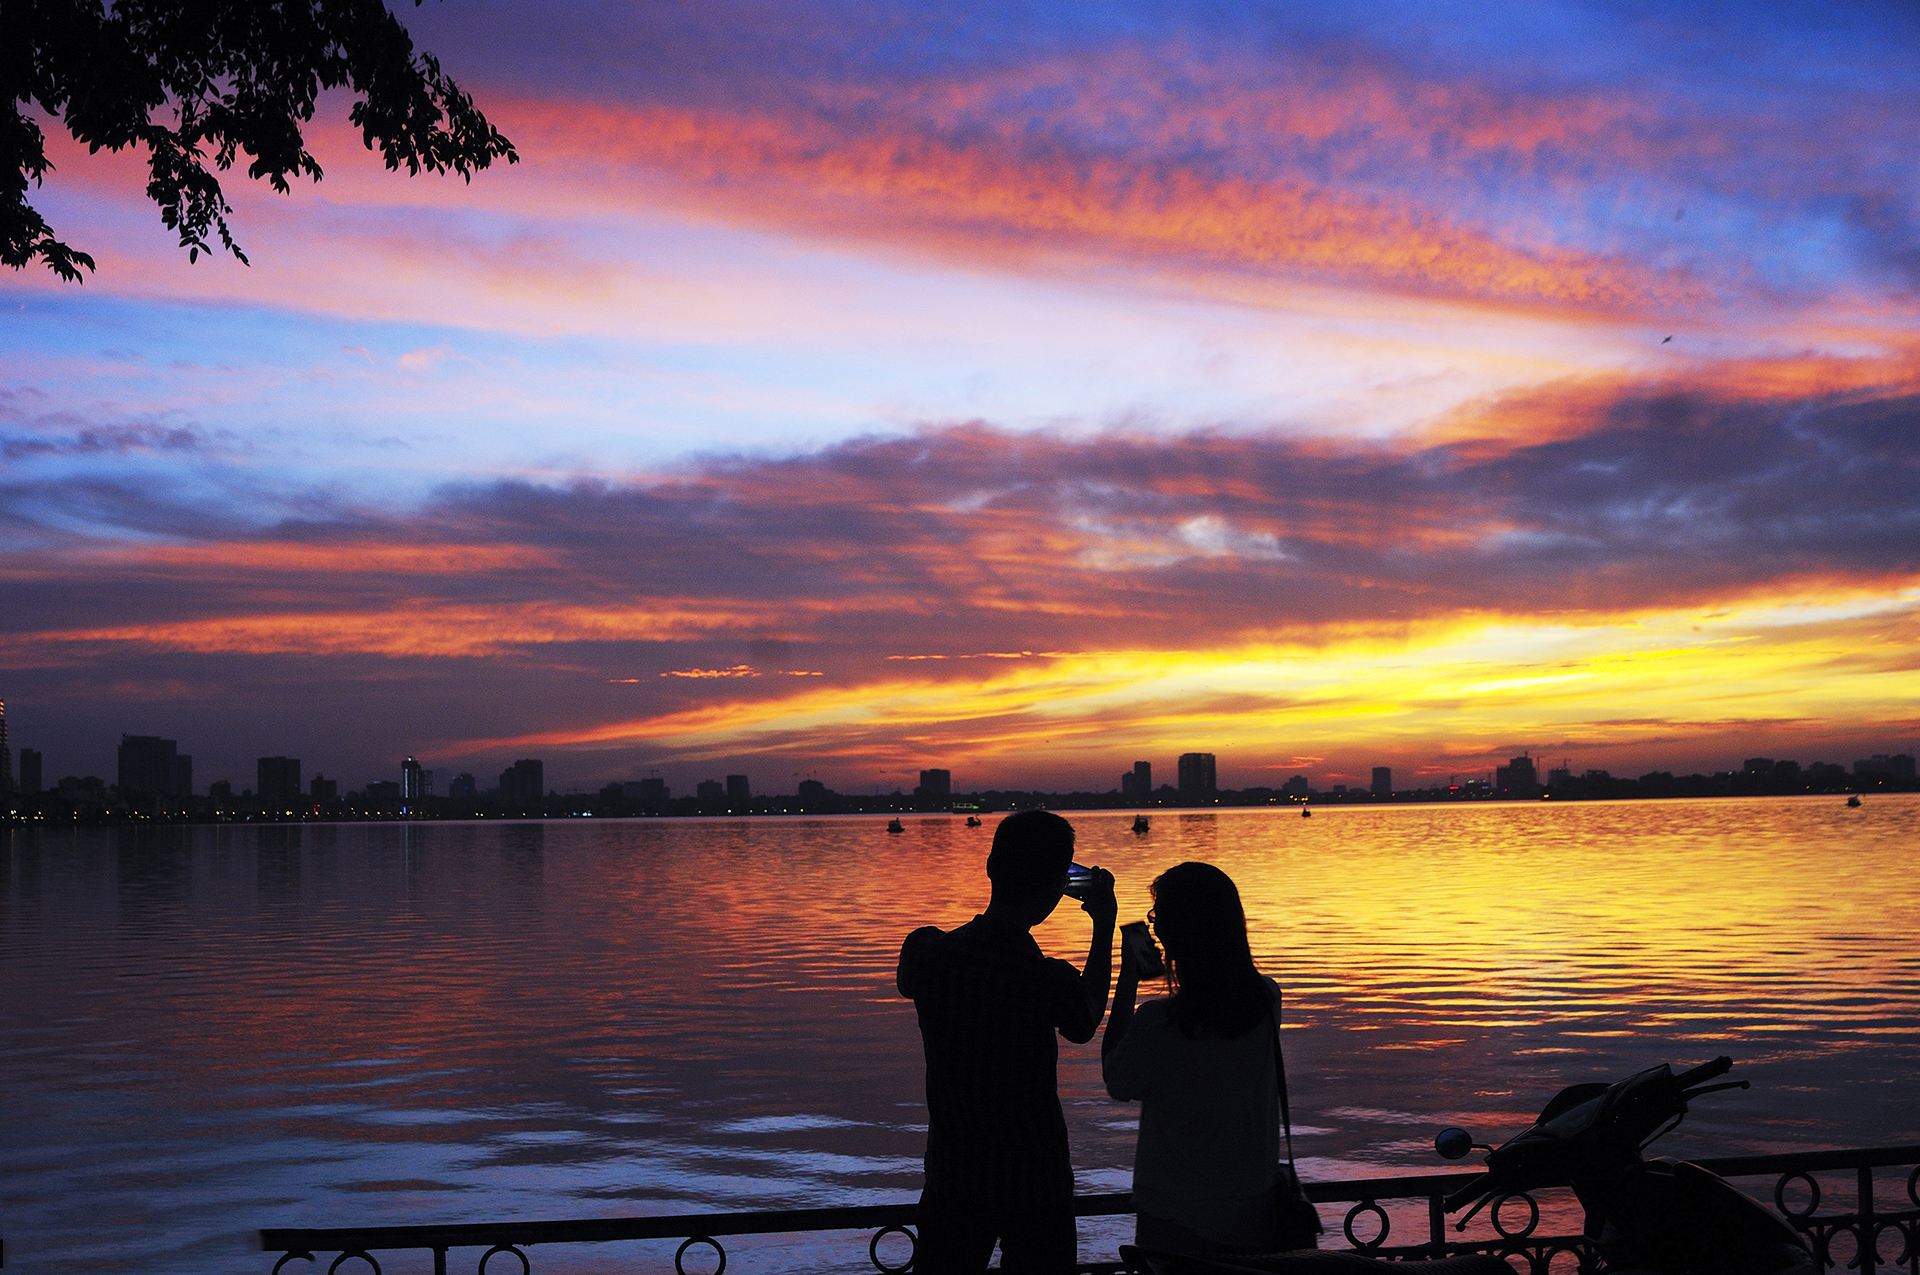 Hồ Tây: Hồ Tây là một trong những điểm đến nổi tiếng của Hà Nội với phong cảnh đẹp tuyệt vời cùng những hoạt động giải trí phong phú. Hãy cùng xem hình ảnh để đắm mình trong ánh nắng vàng rực rỡ của hồ Tây.